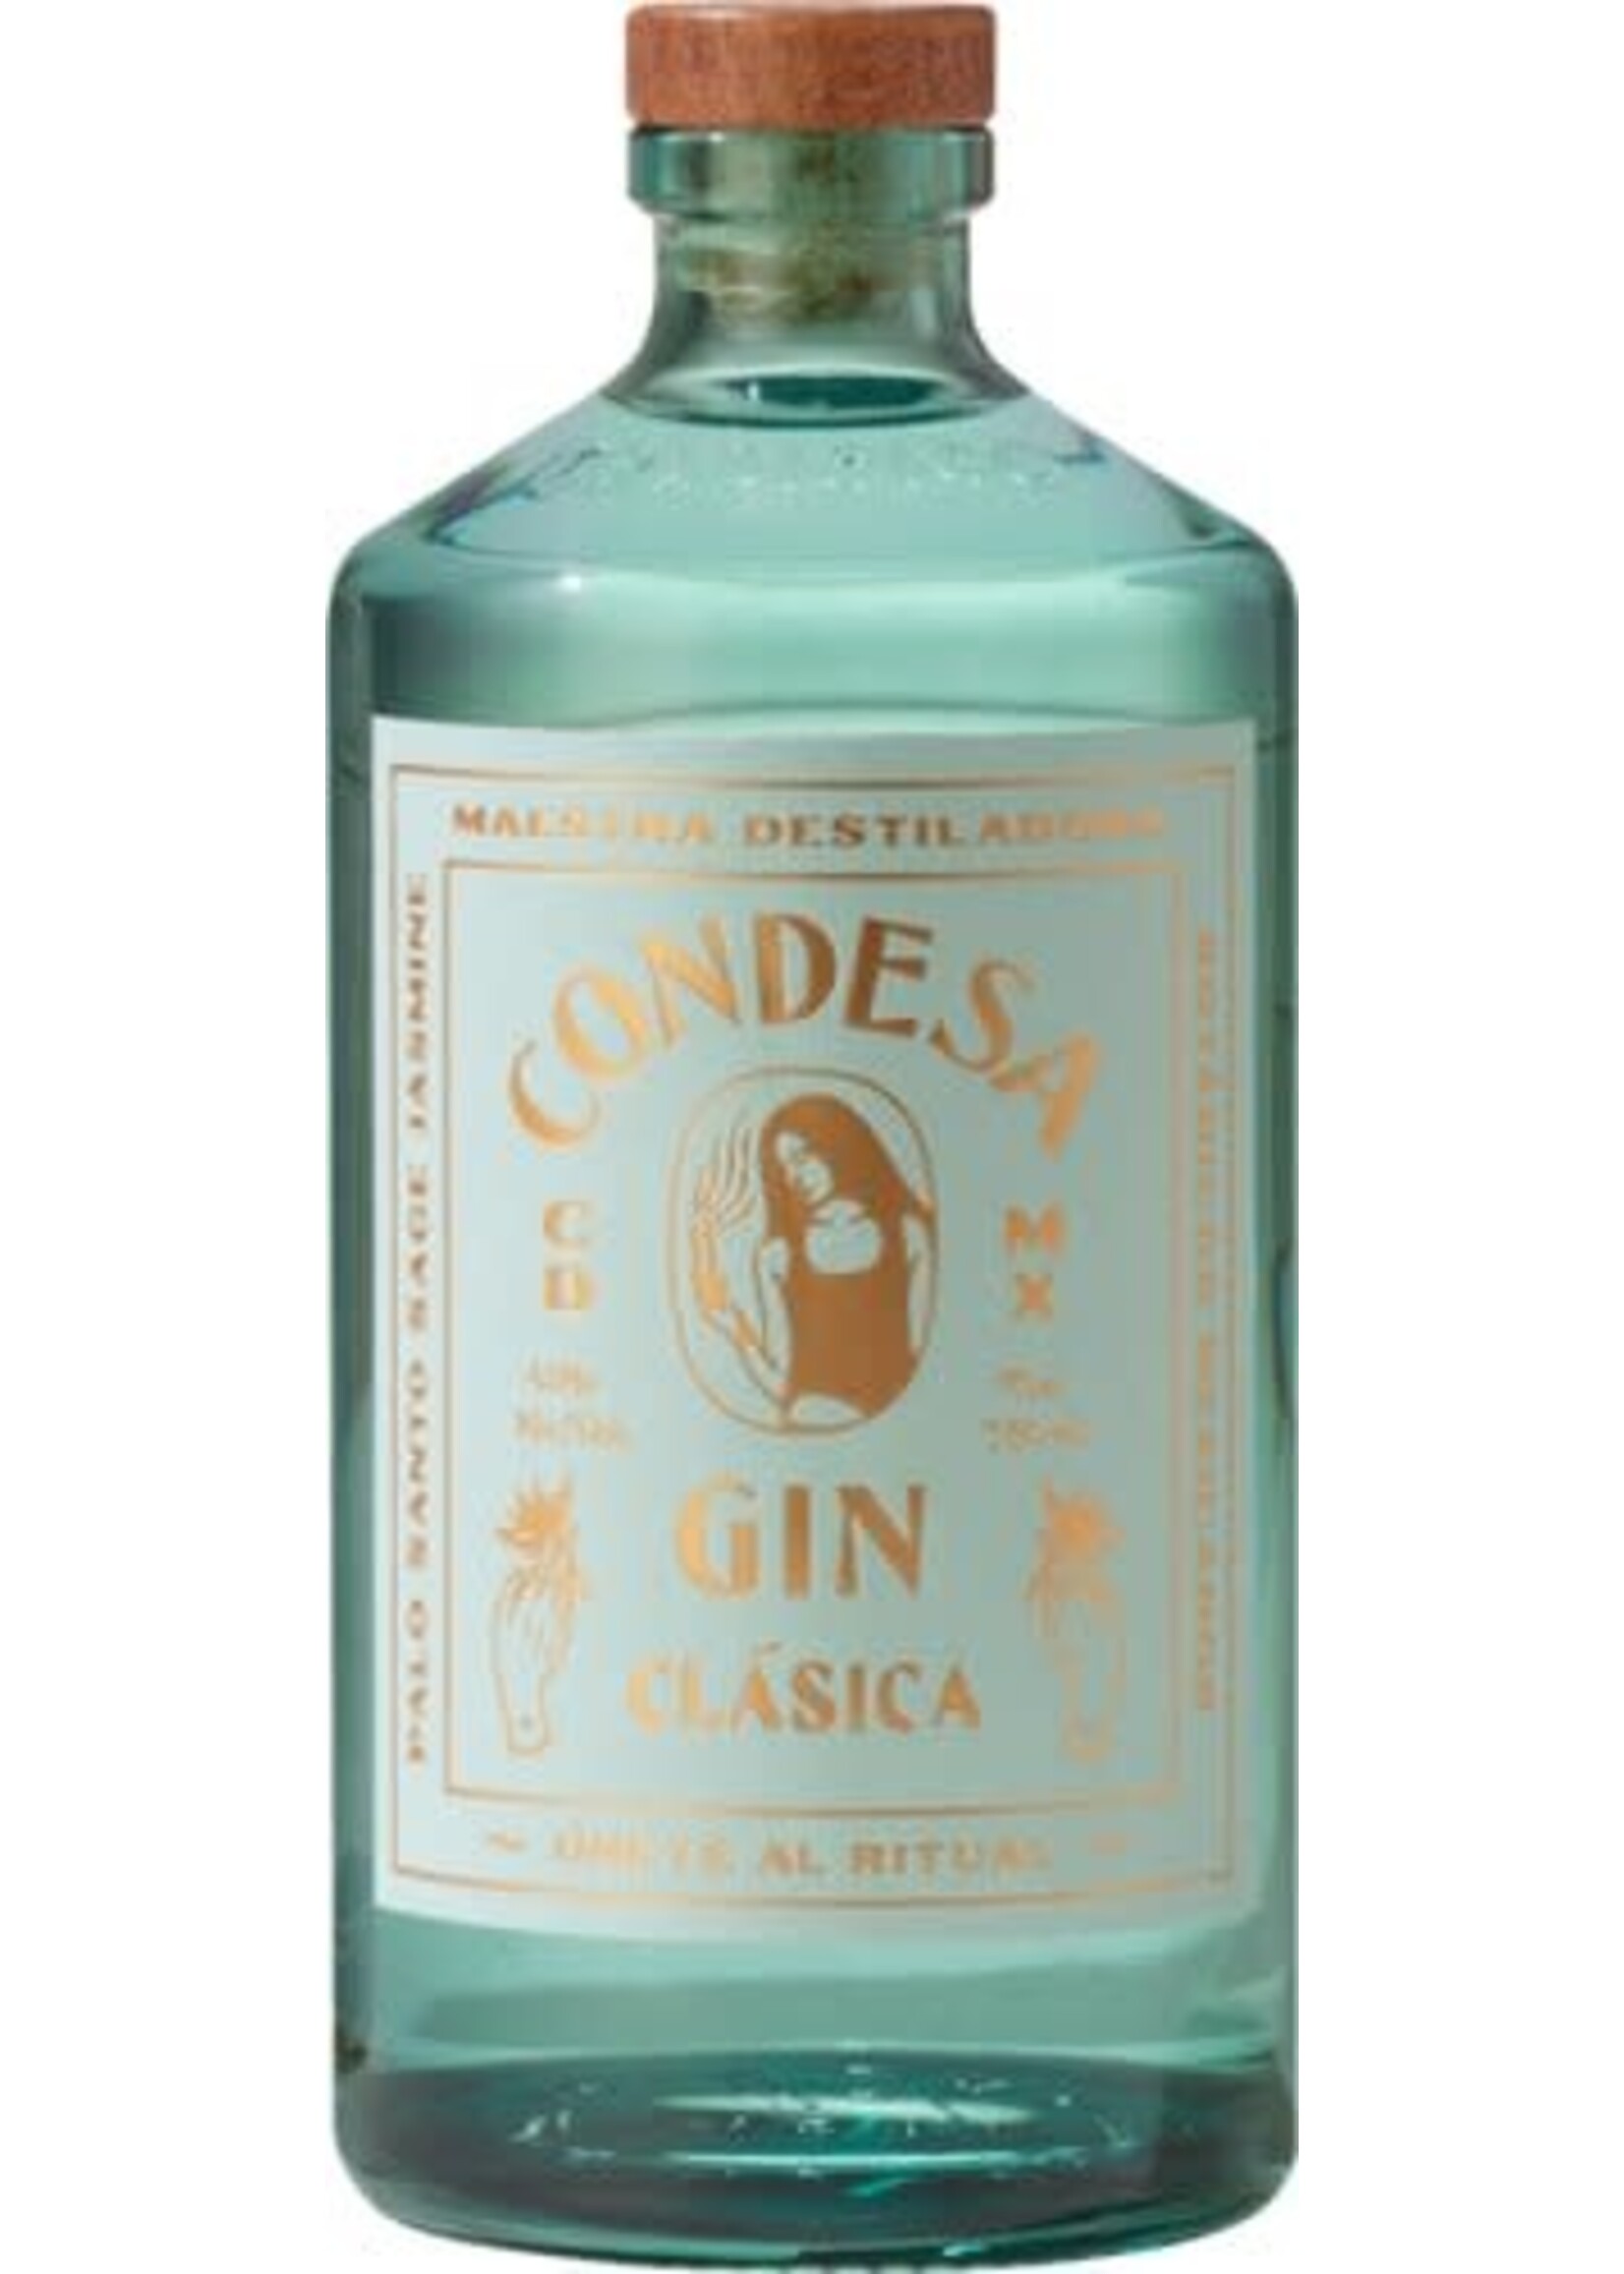 Condesa Condesa / Clasica Mexican Gin / 750mL